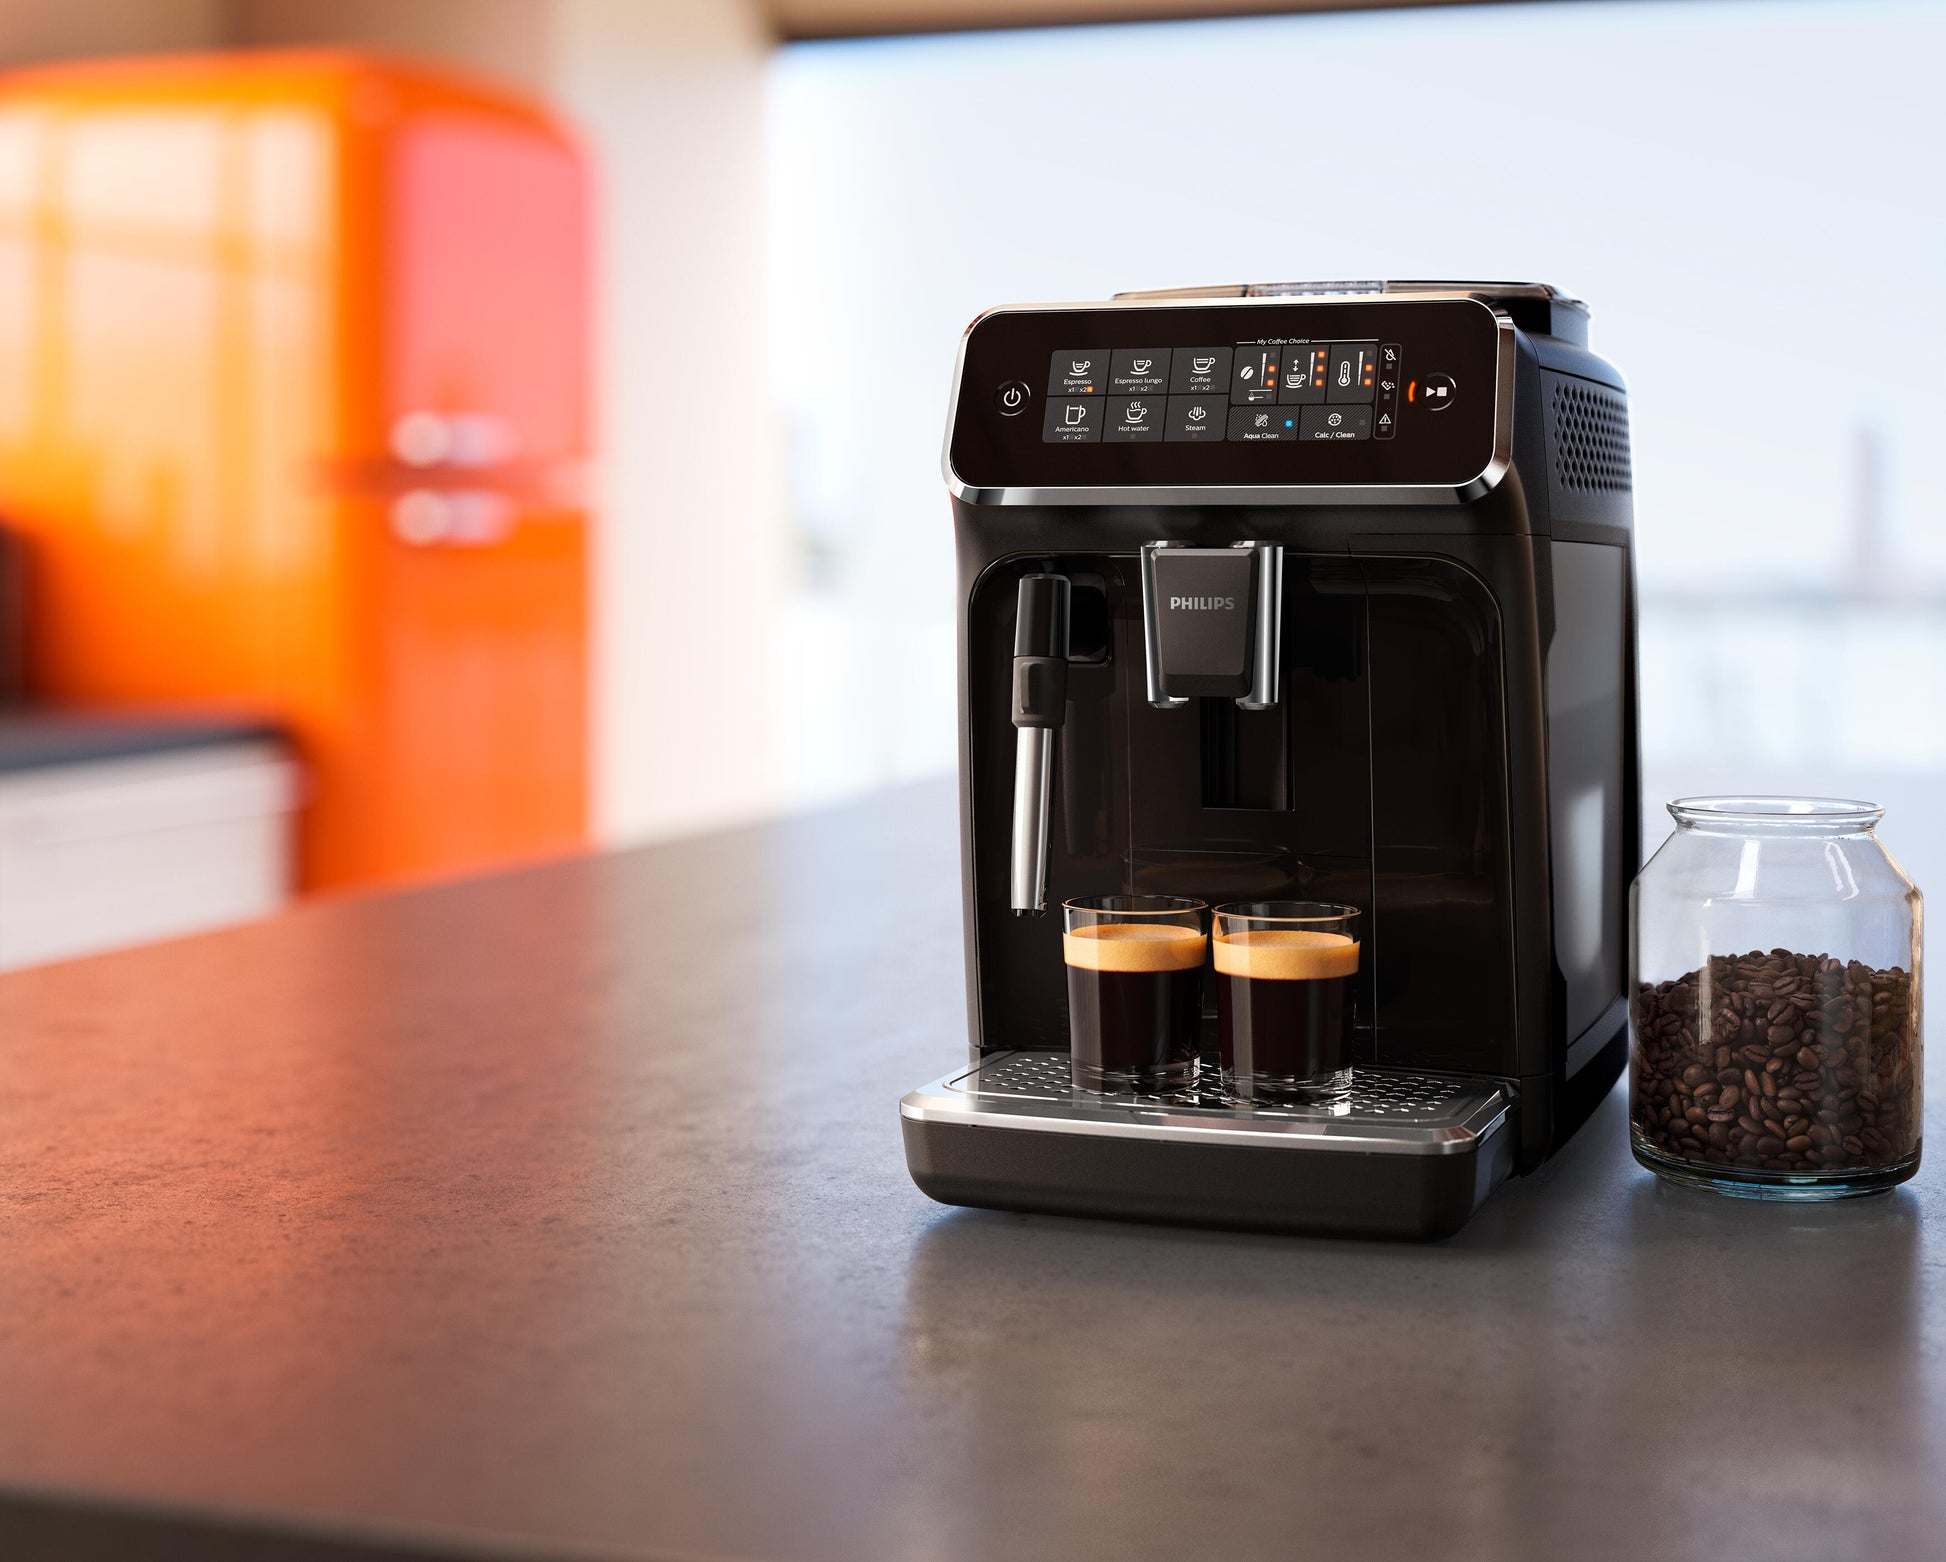 Philips 3200 Coffee Machine - part 1